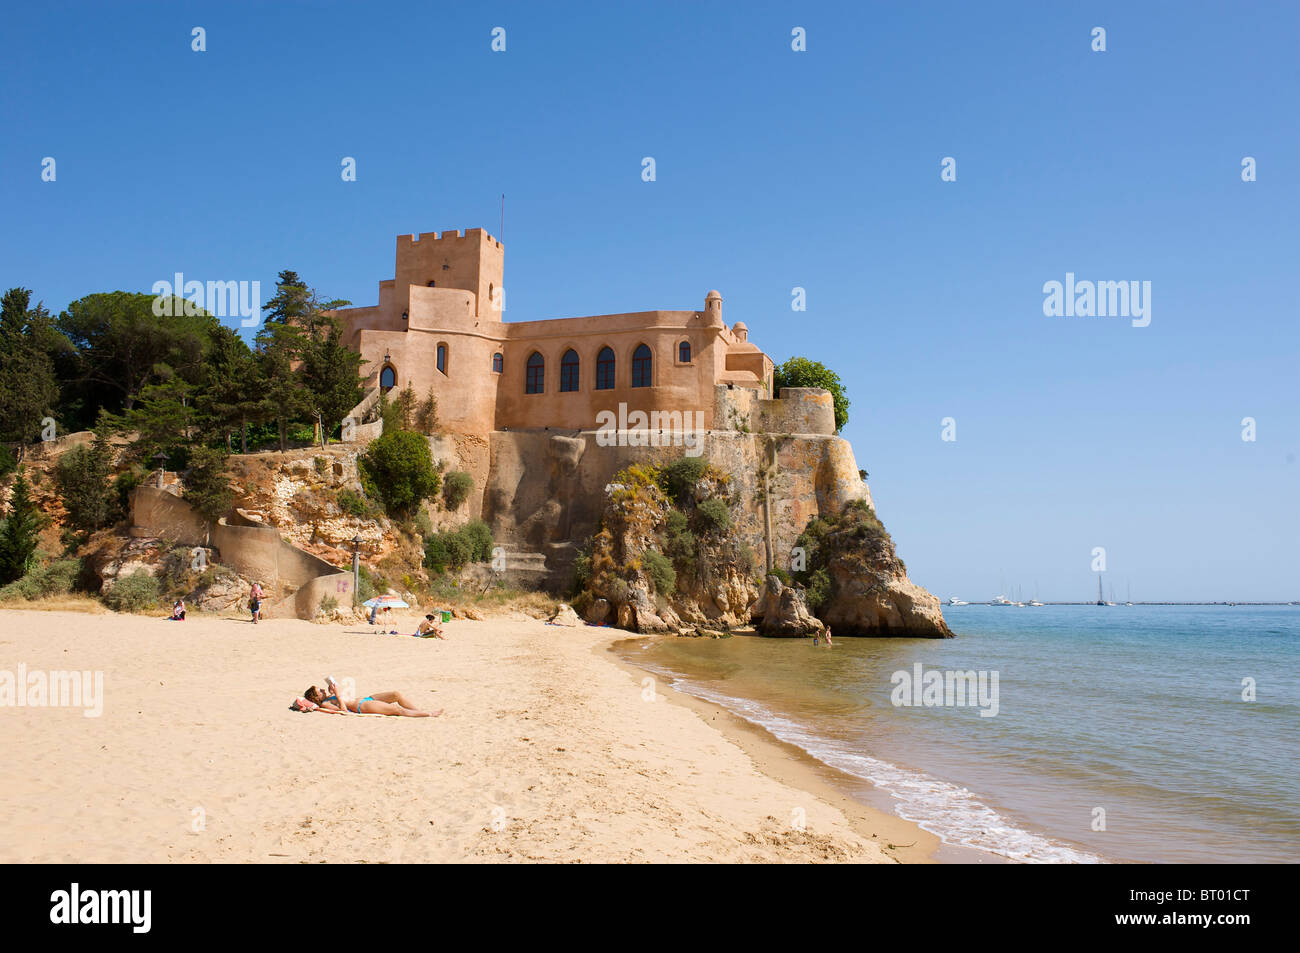 Castle in Ferragudo, Algarve, Portugal Stock Photo